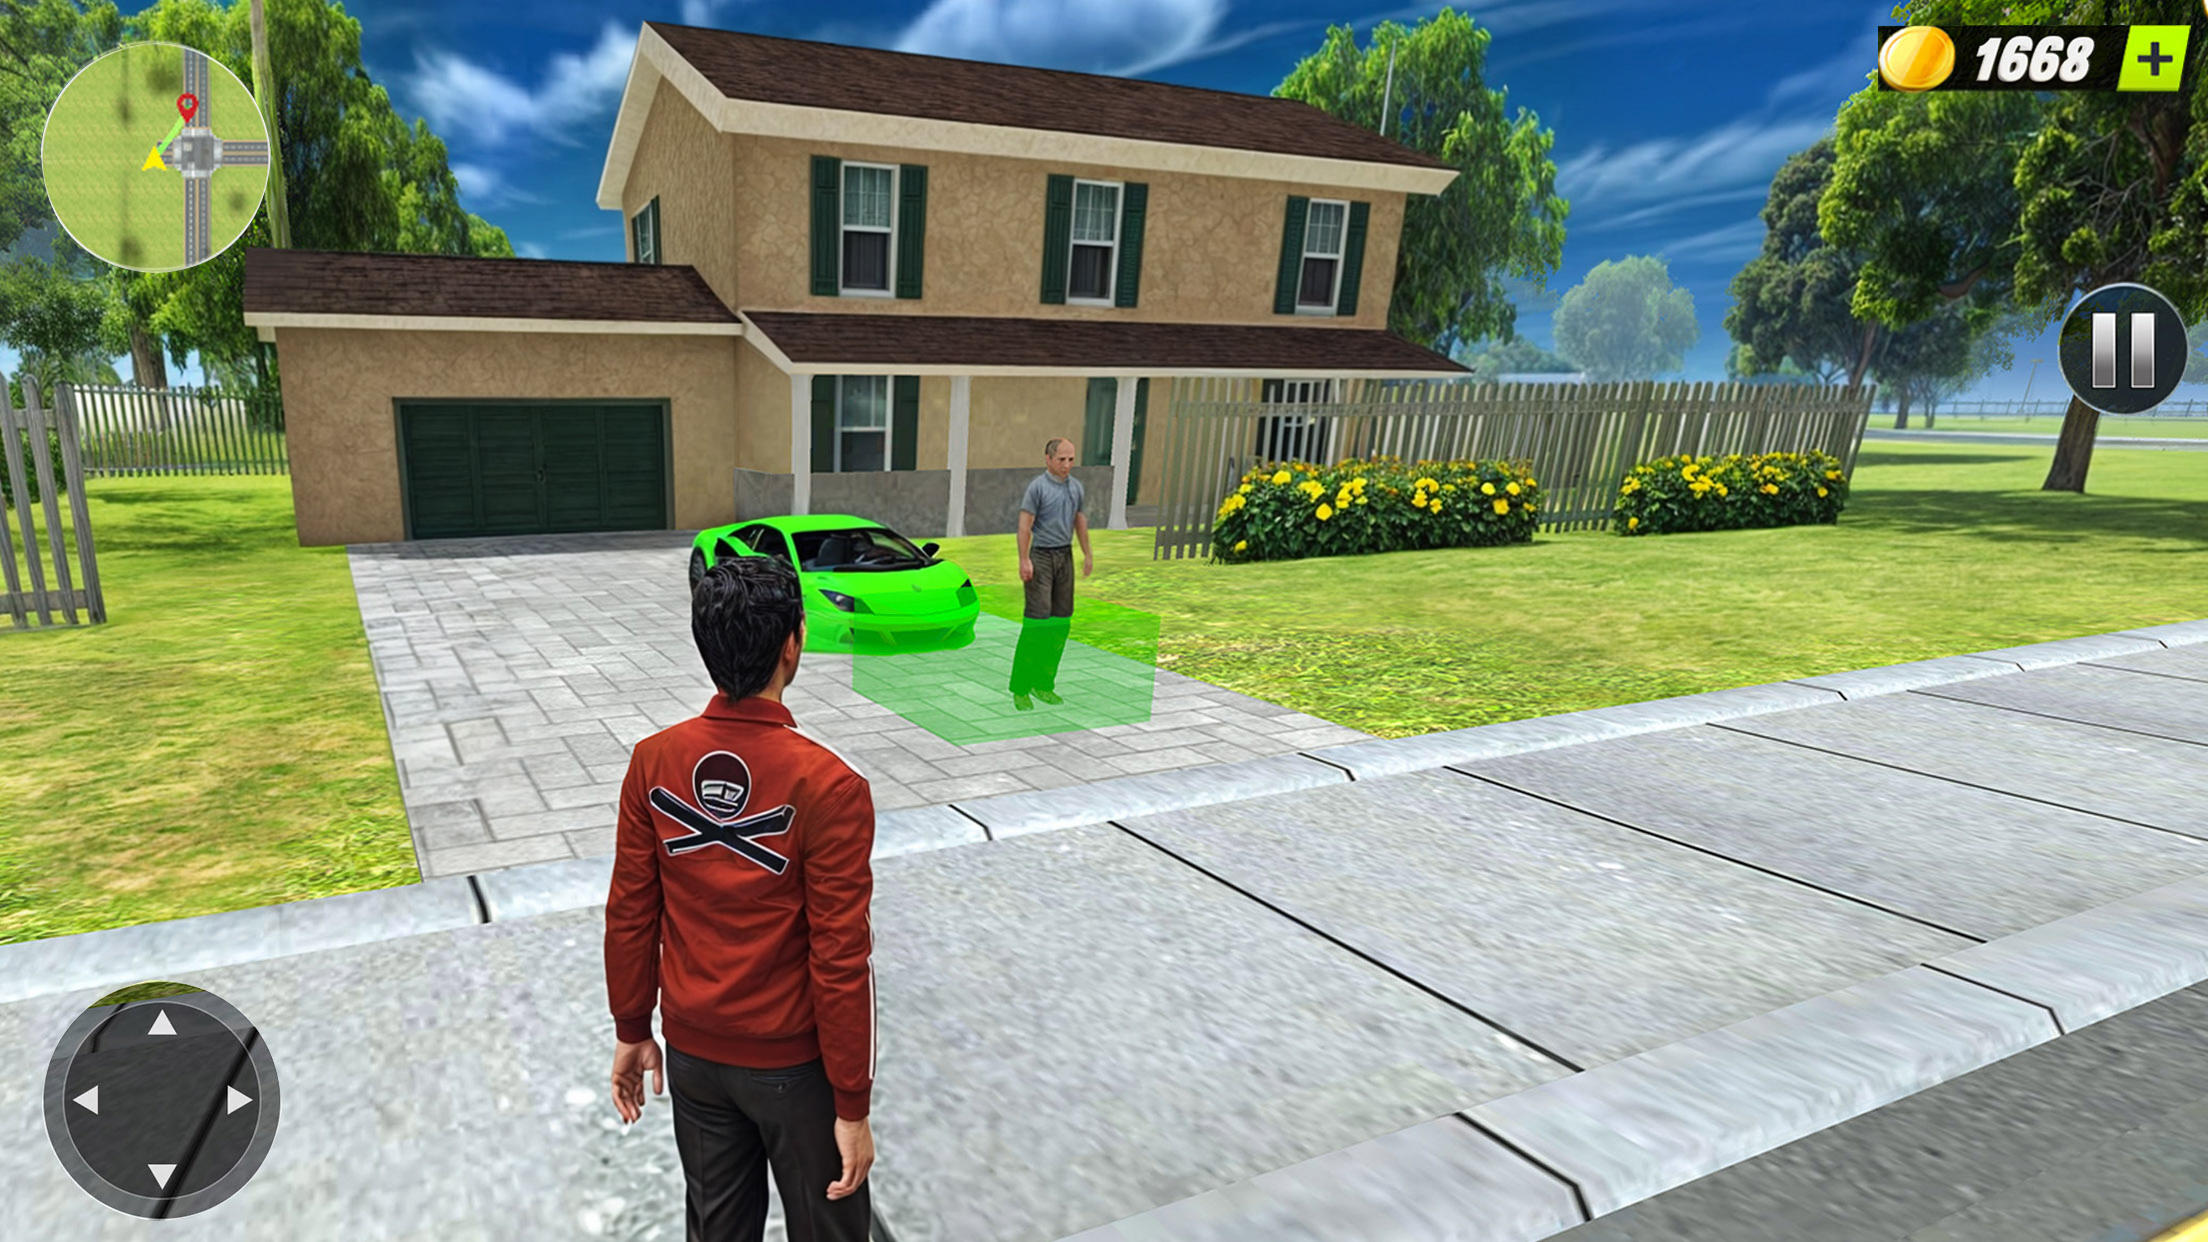 Screenshot 1 of Car Saler 3D: Simulator Dealer 0.0.17